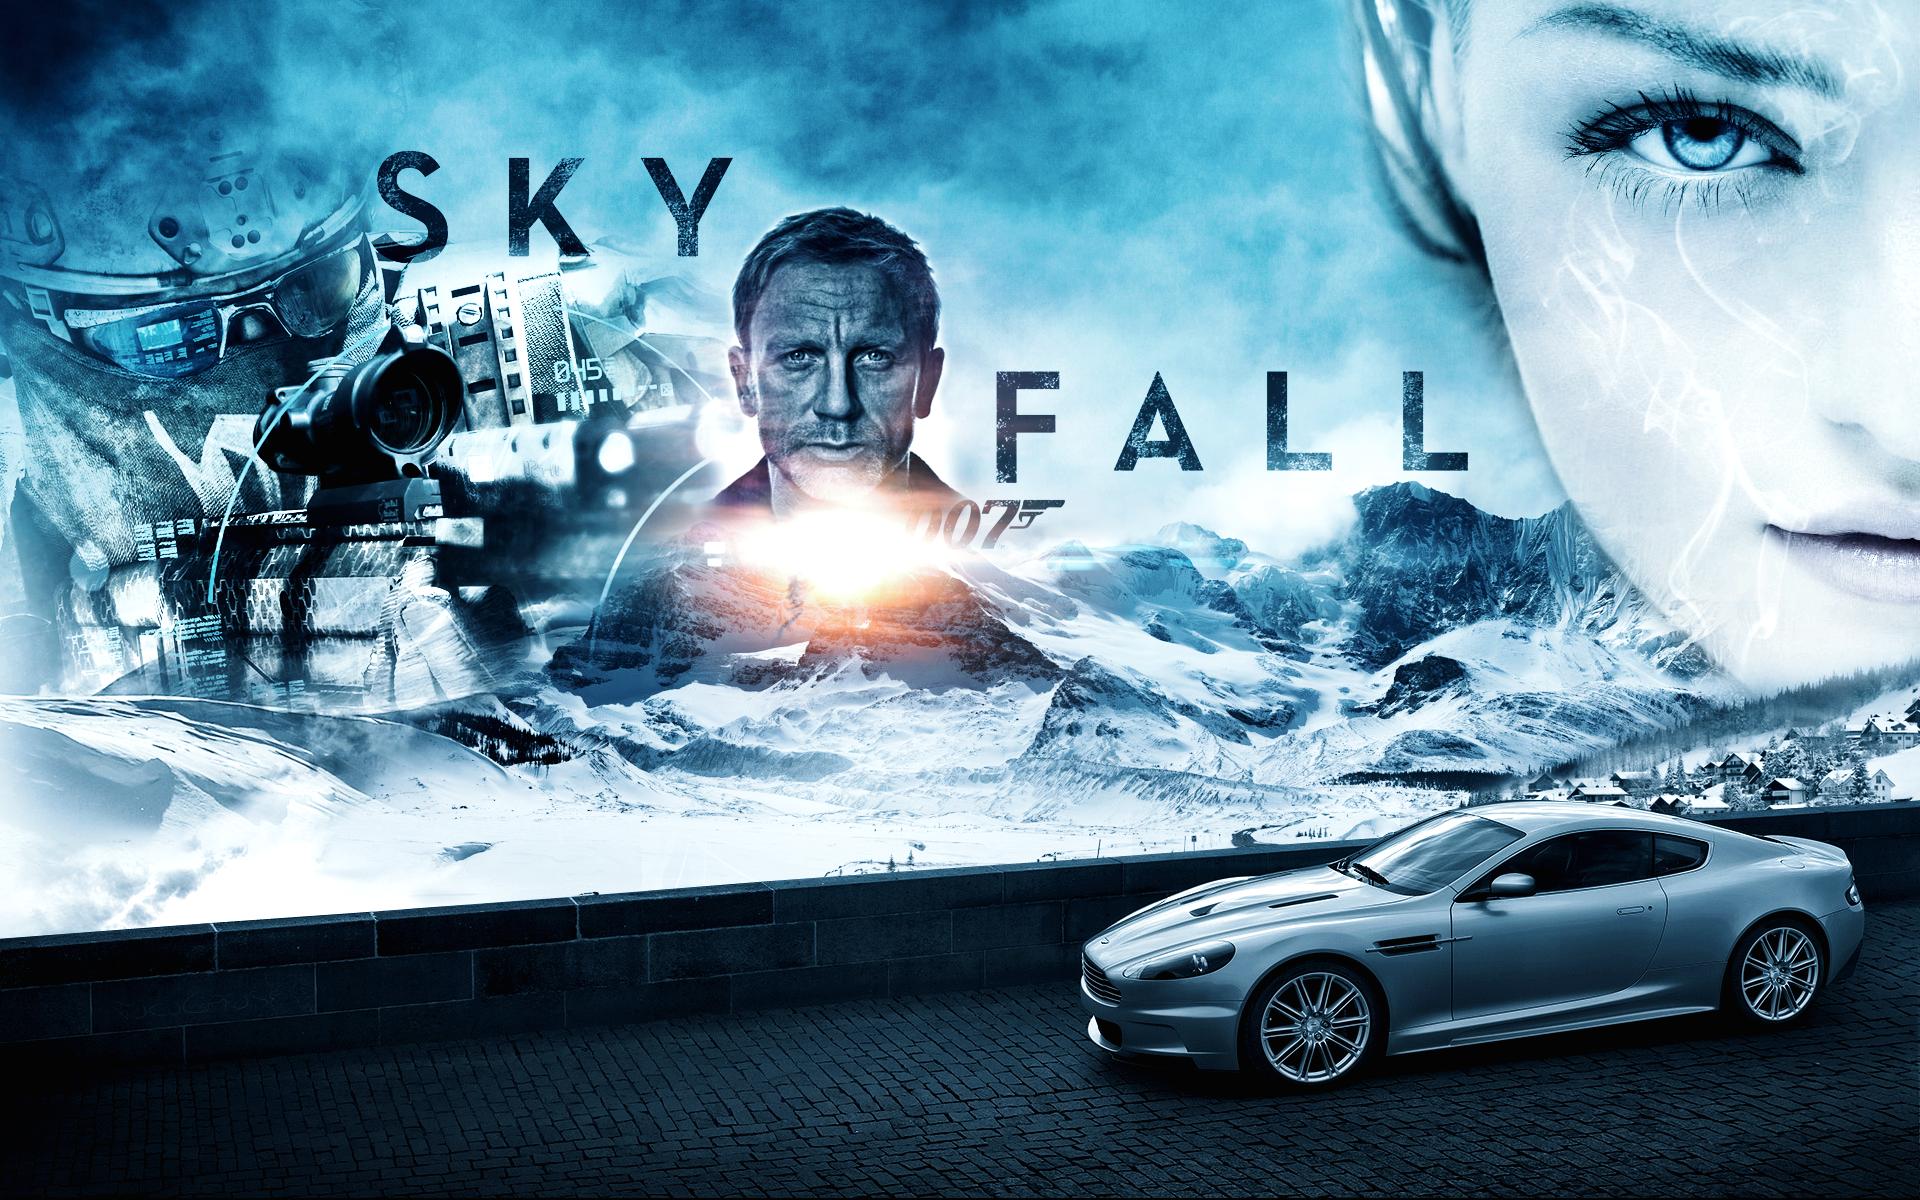 James Bond Skyfall 007 Wallpapers [2012]